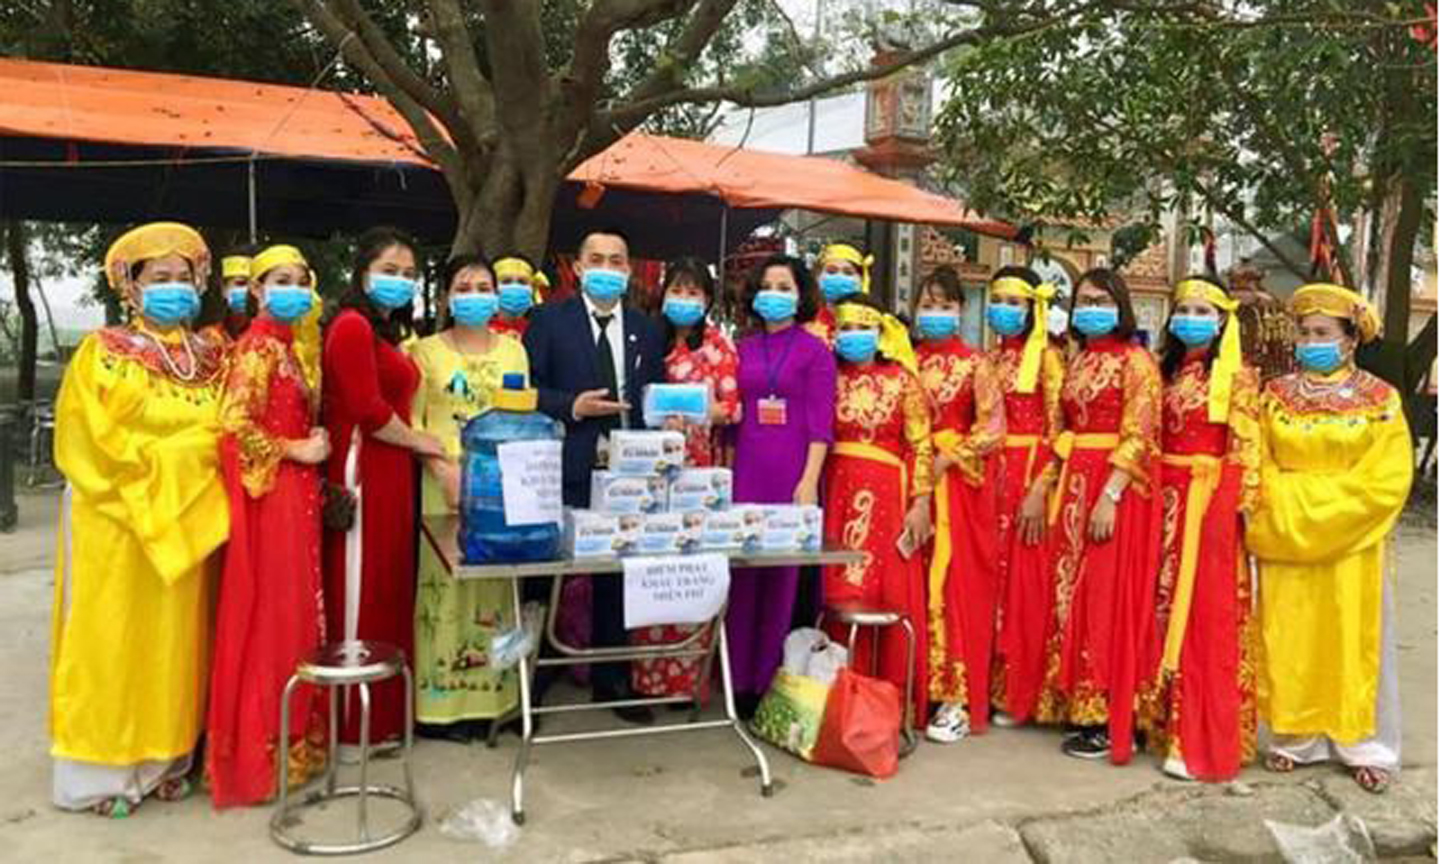 Phát khẩu trang miễn phí tại lễ hội cổ truyền phường Phú Lương (quận Hà Đông, Hà Nội).